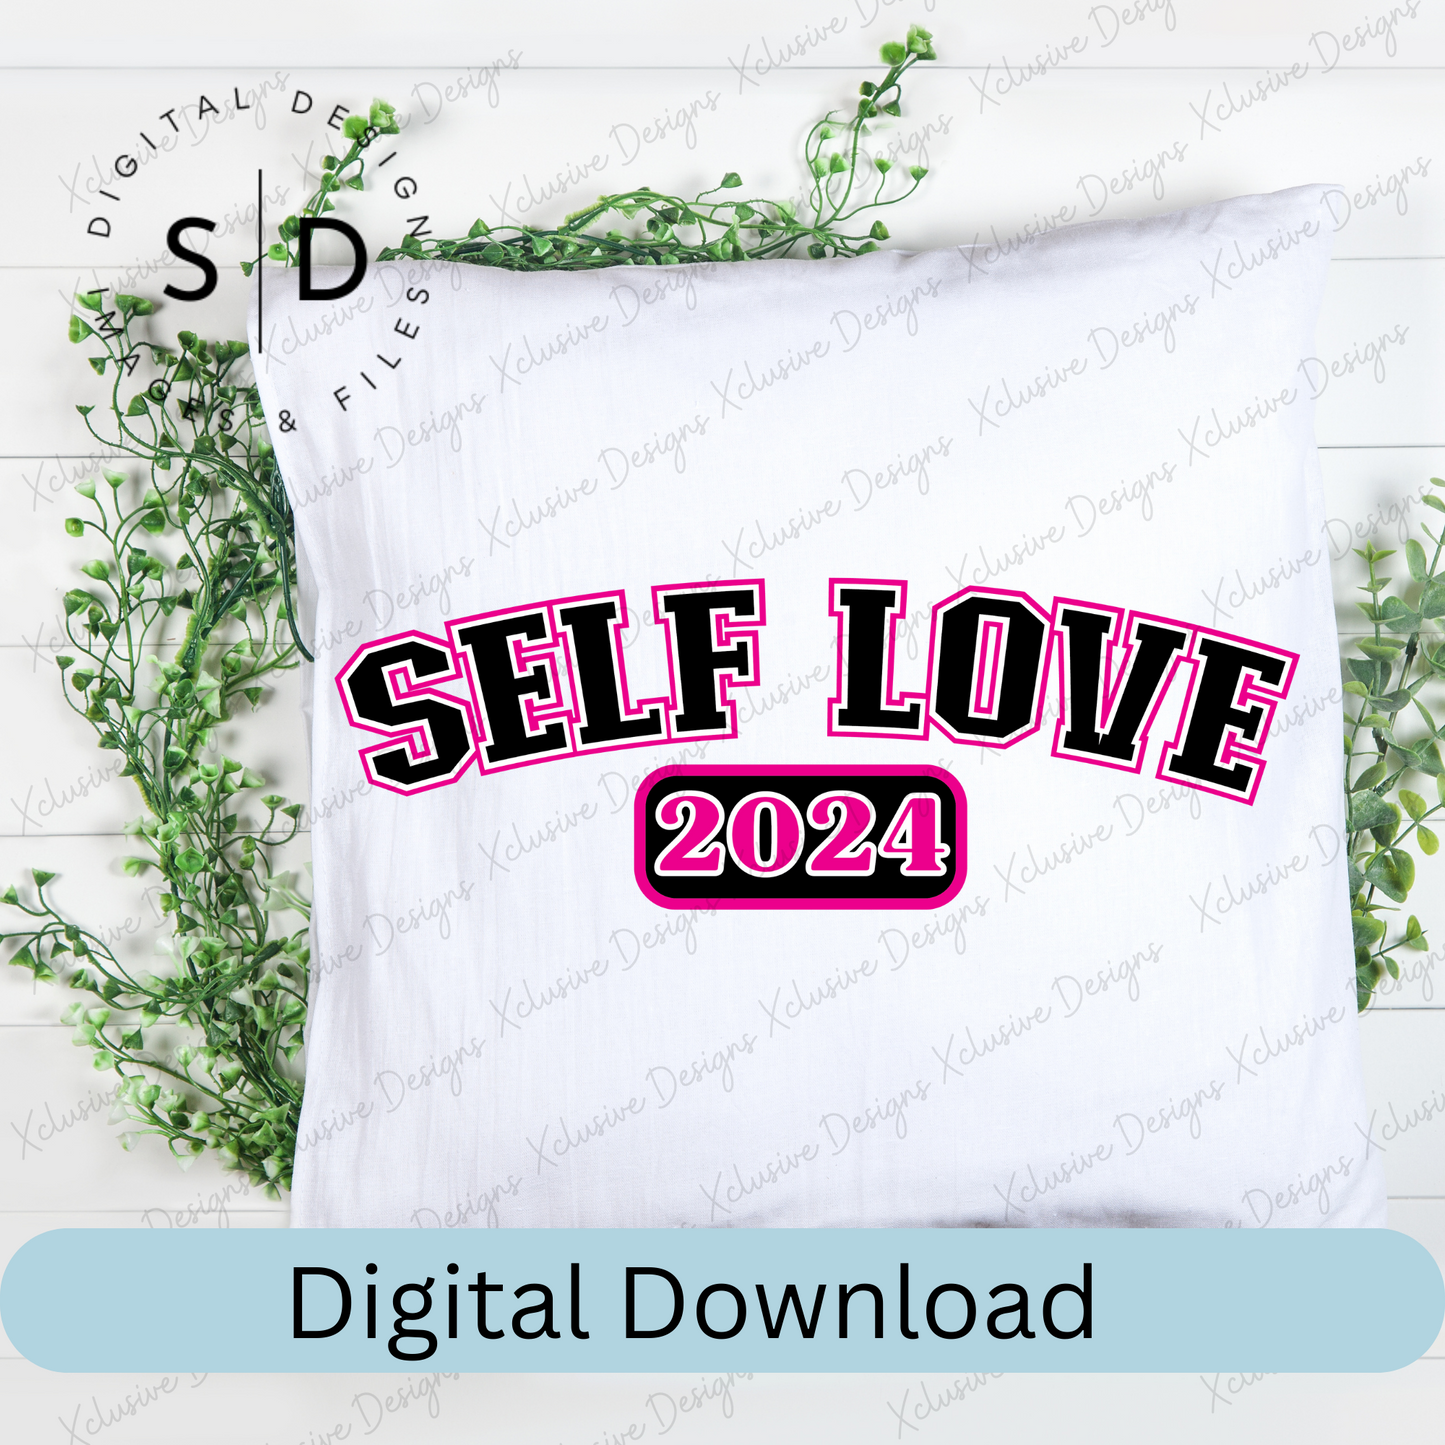 Self Love SVG